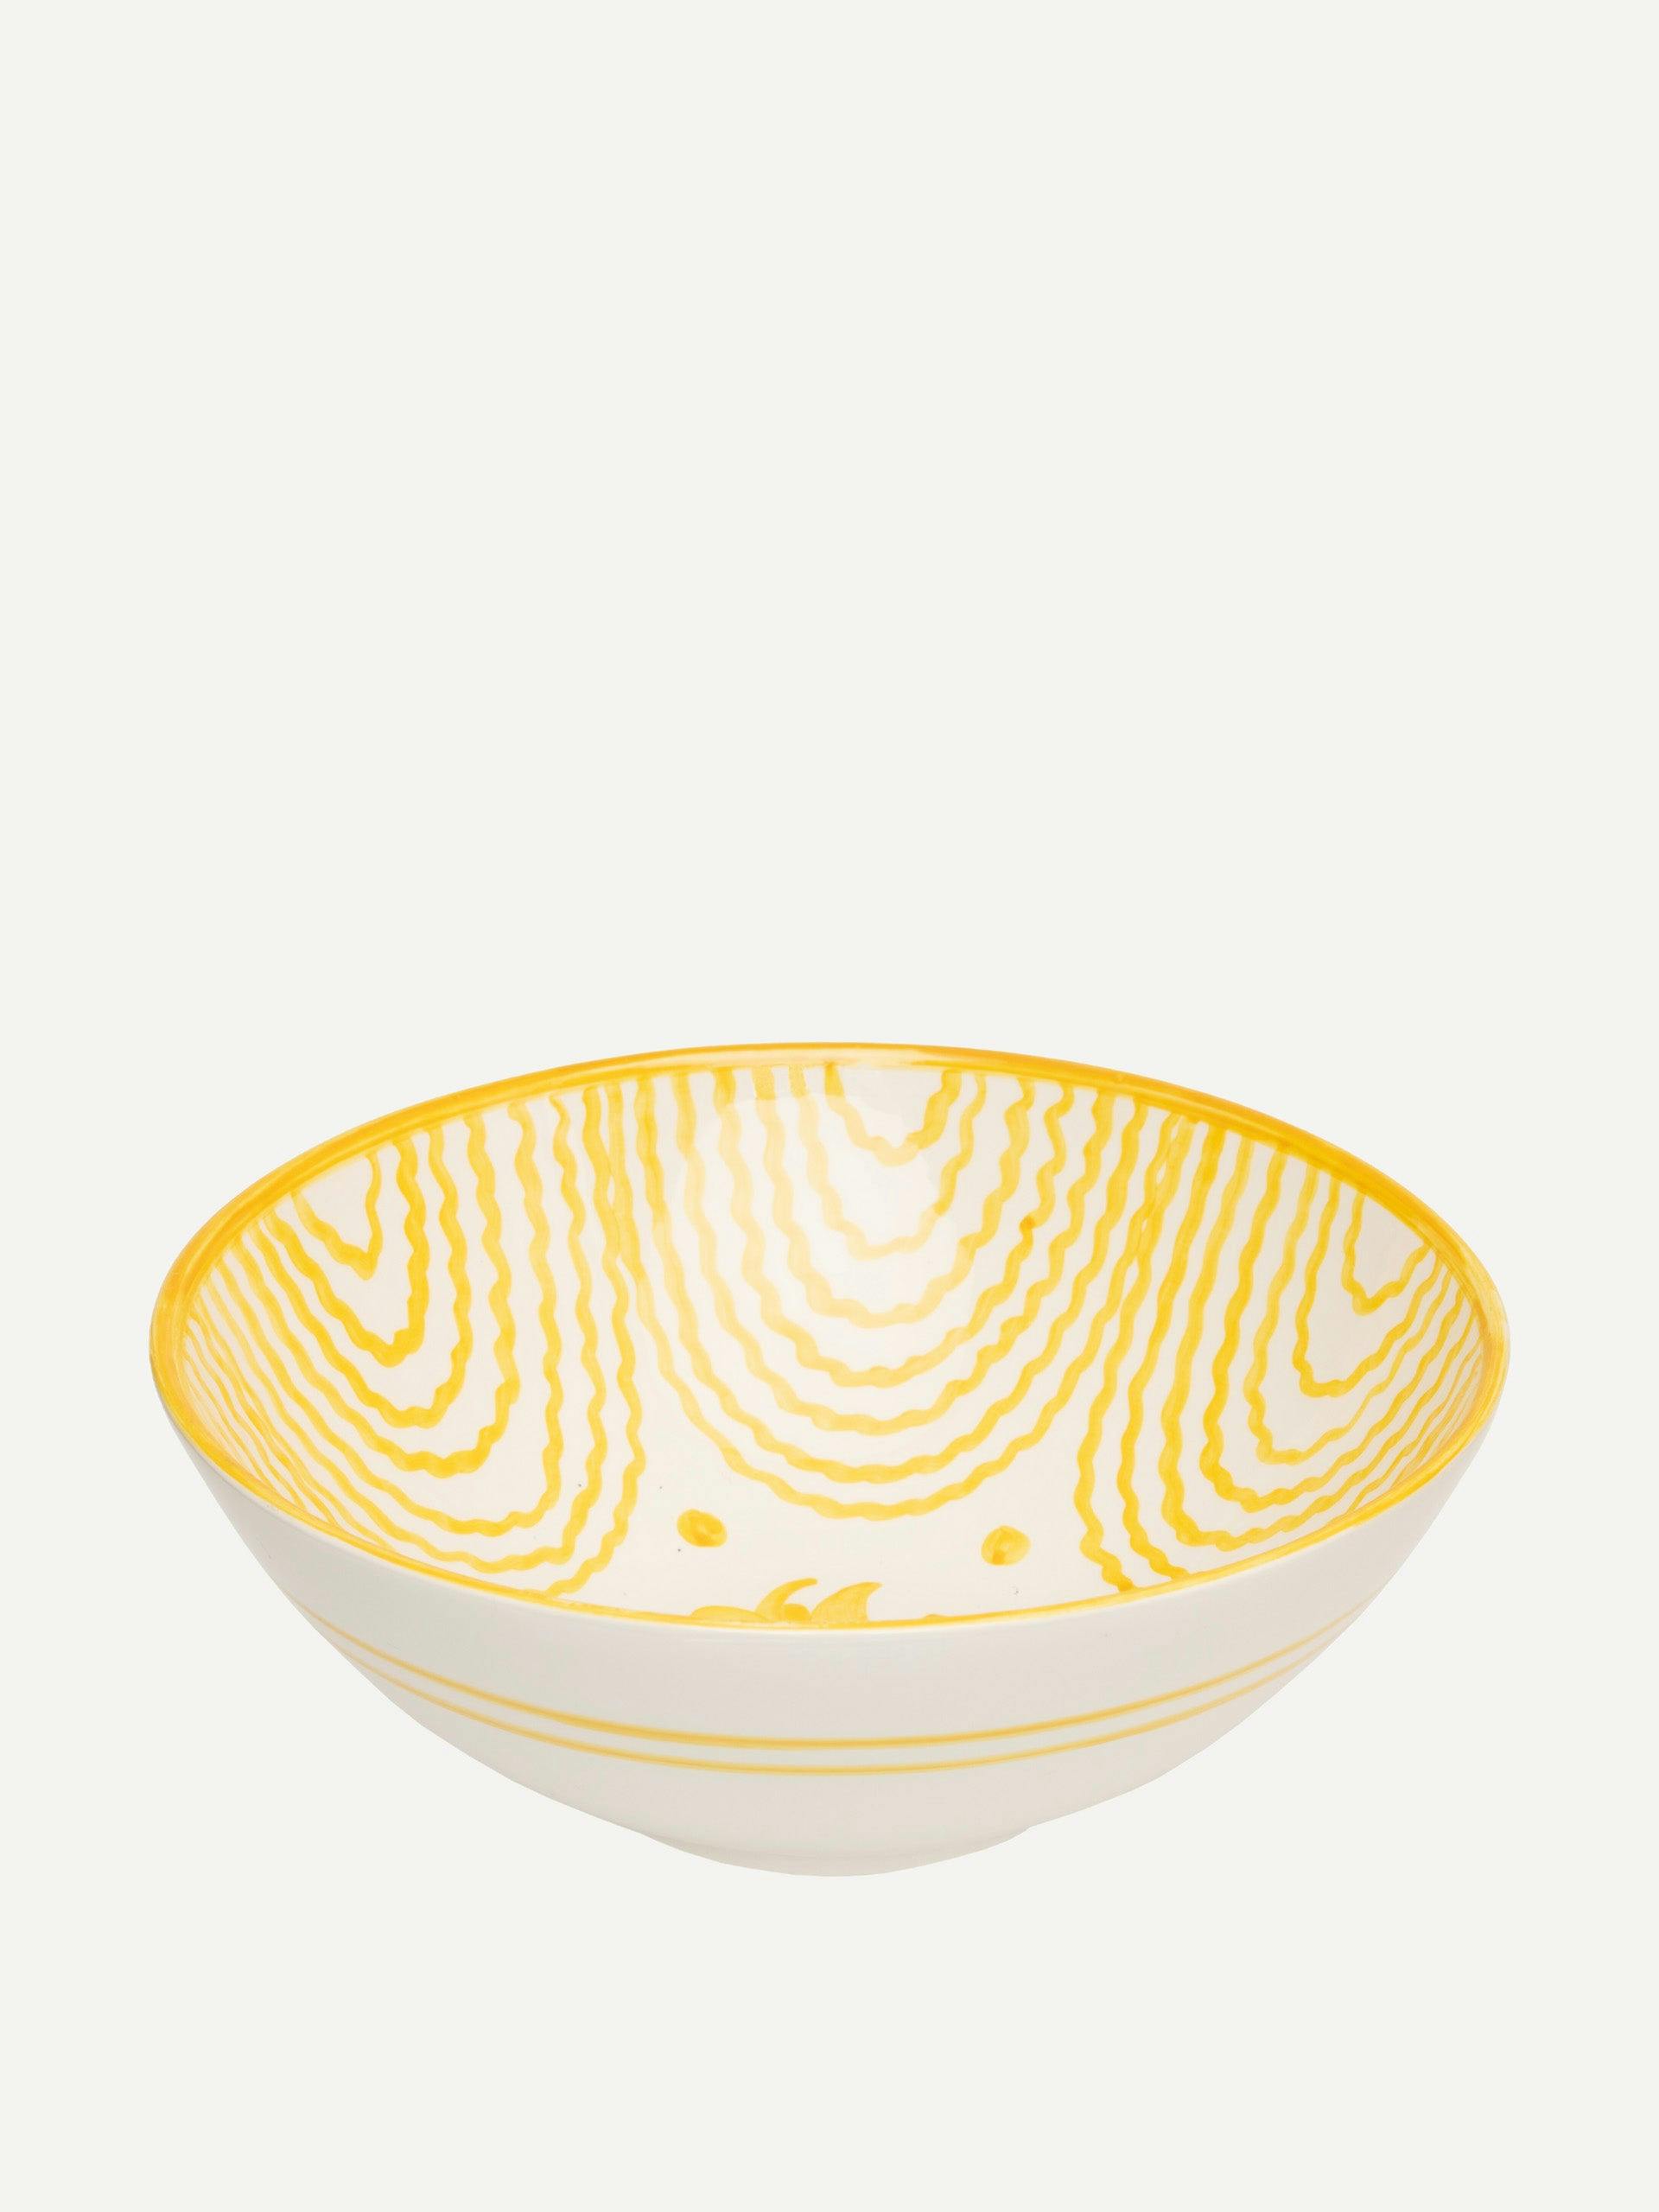 Large yellow serving bowl